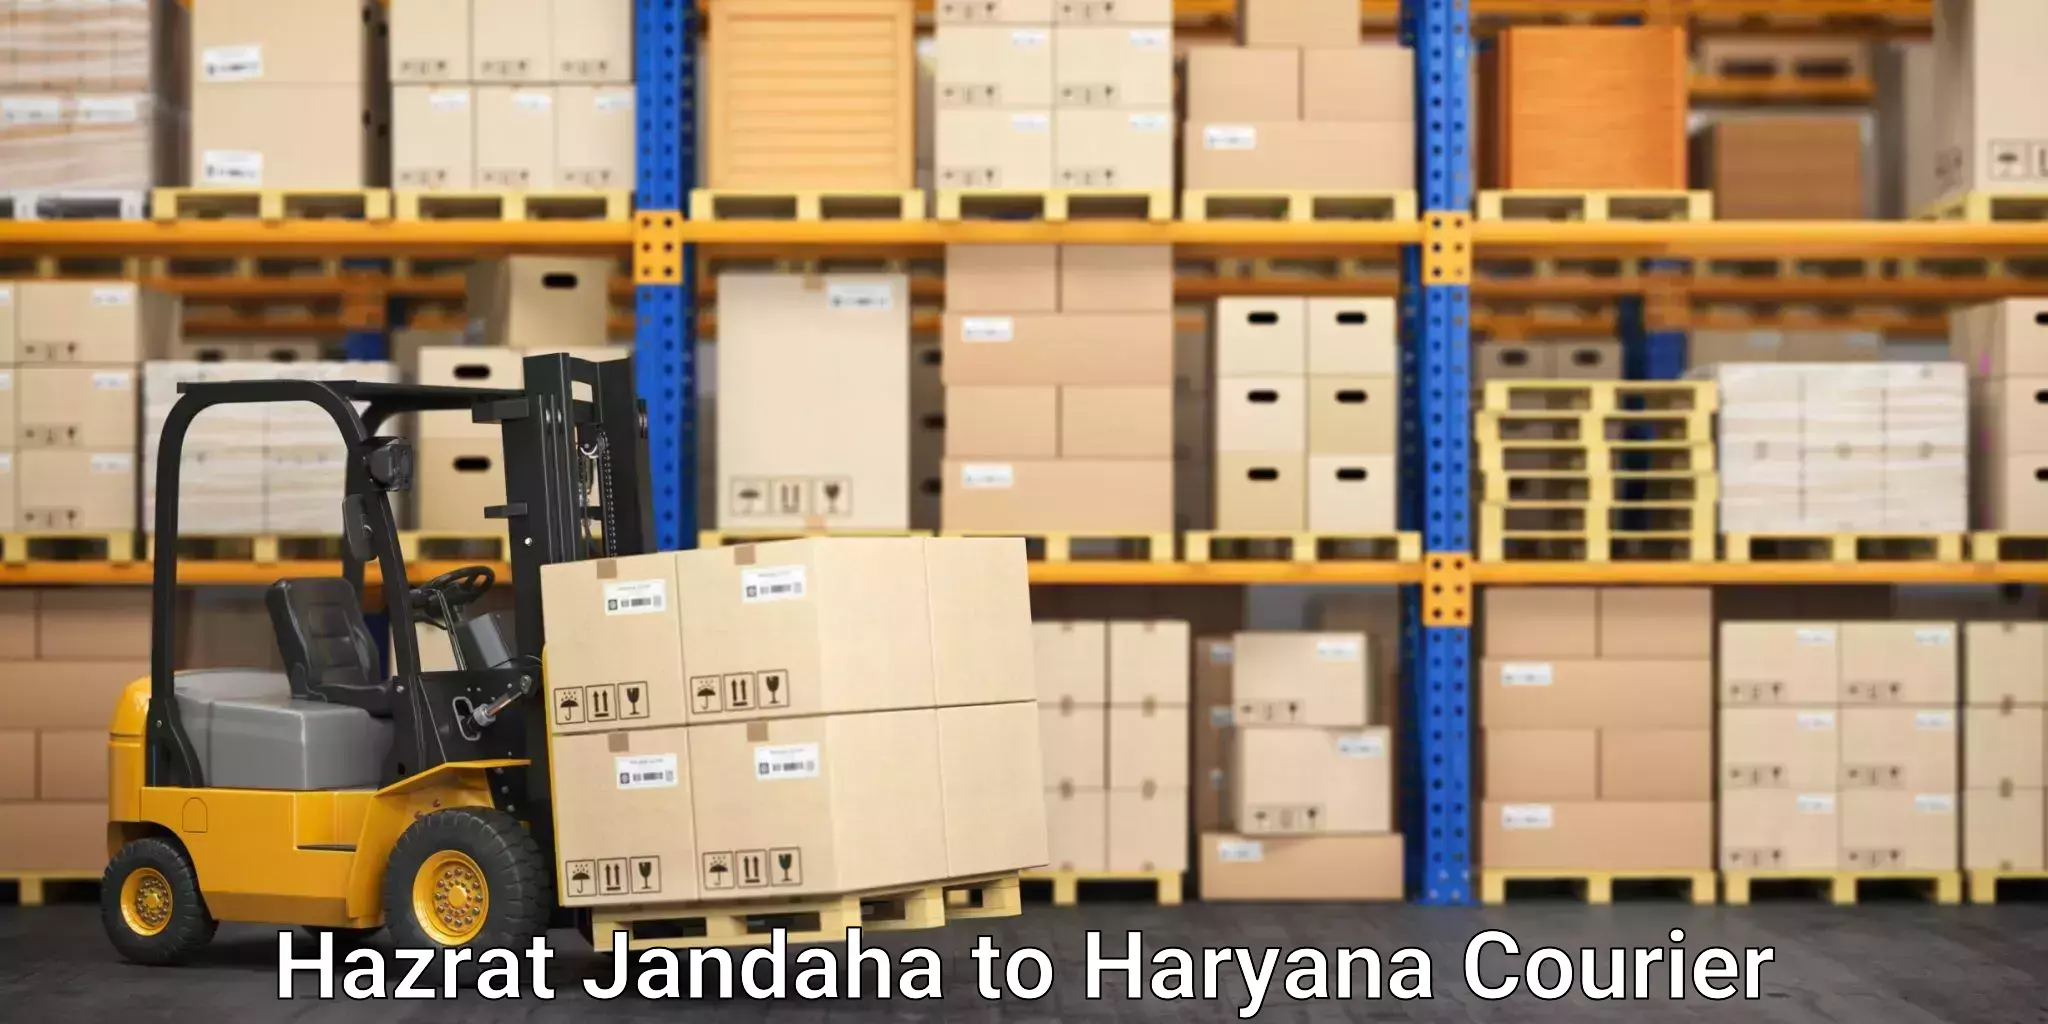 Specialized furniture moving Hazrat Jandaha to Gurgaon